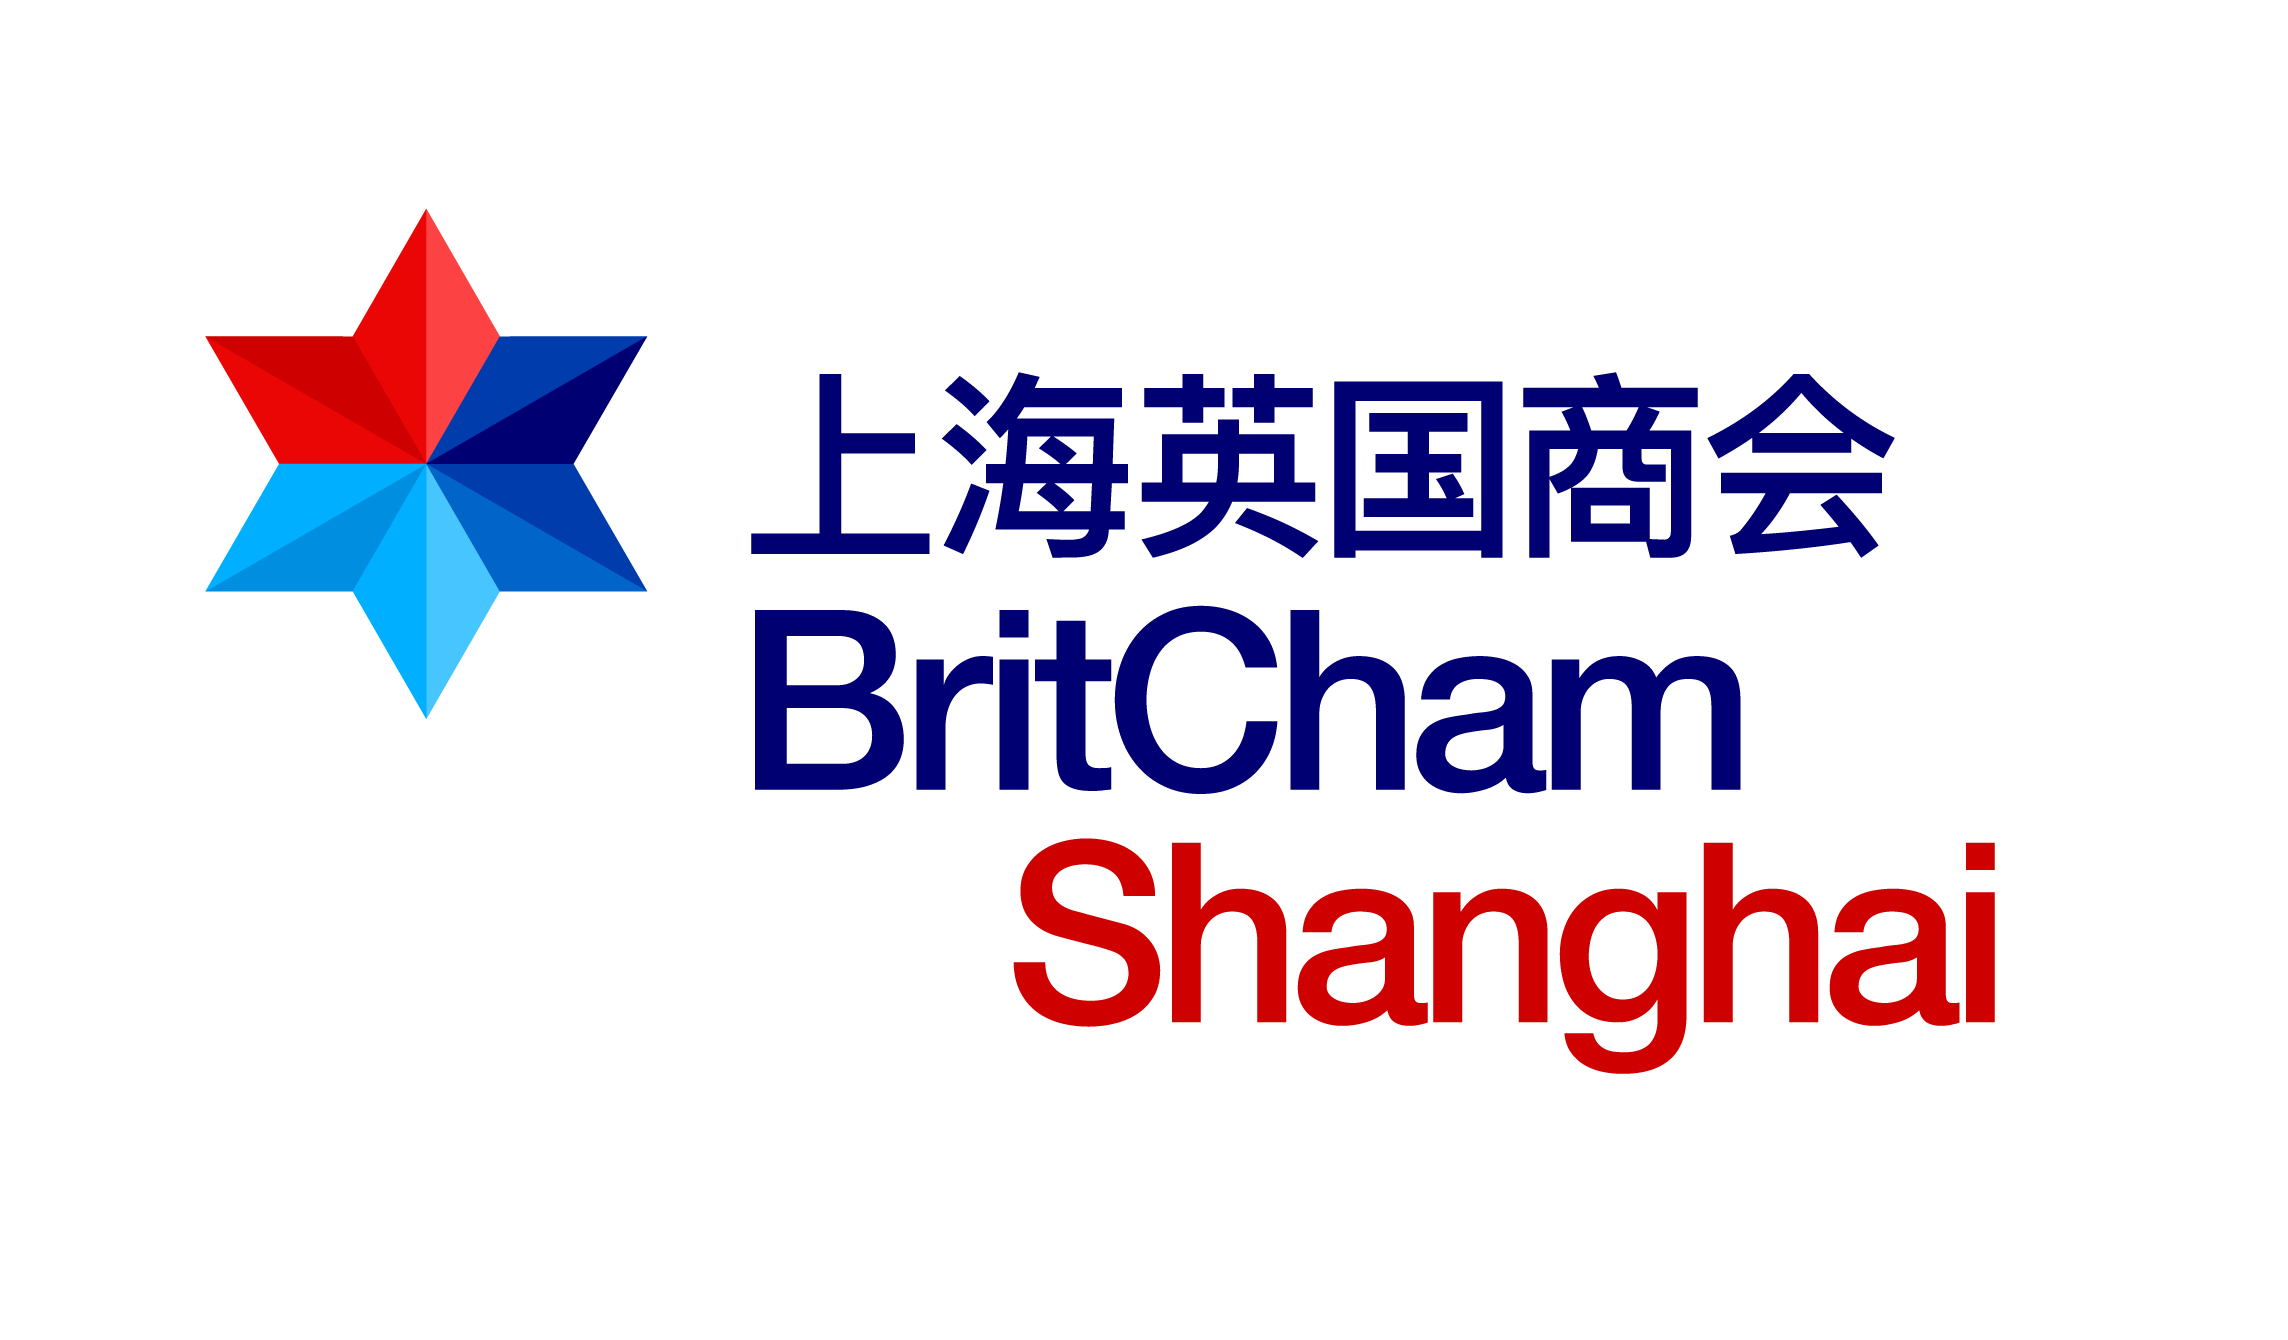 British Chamber of Commerce Shanghai